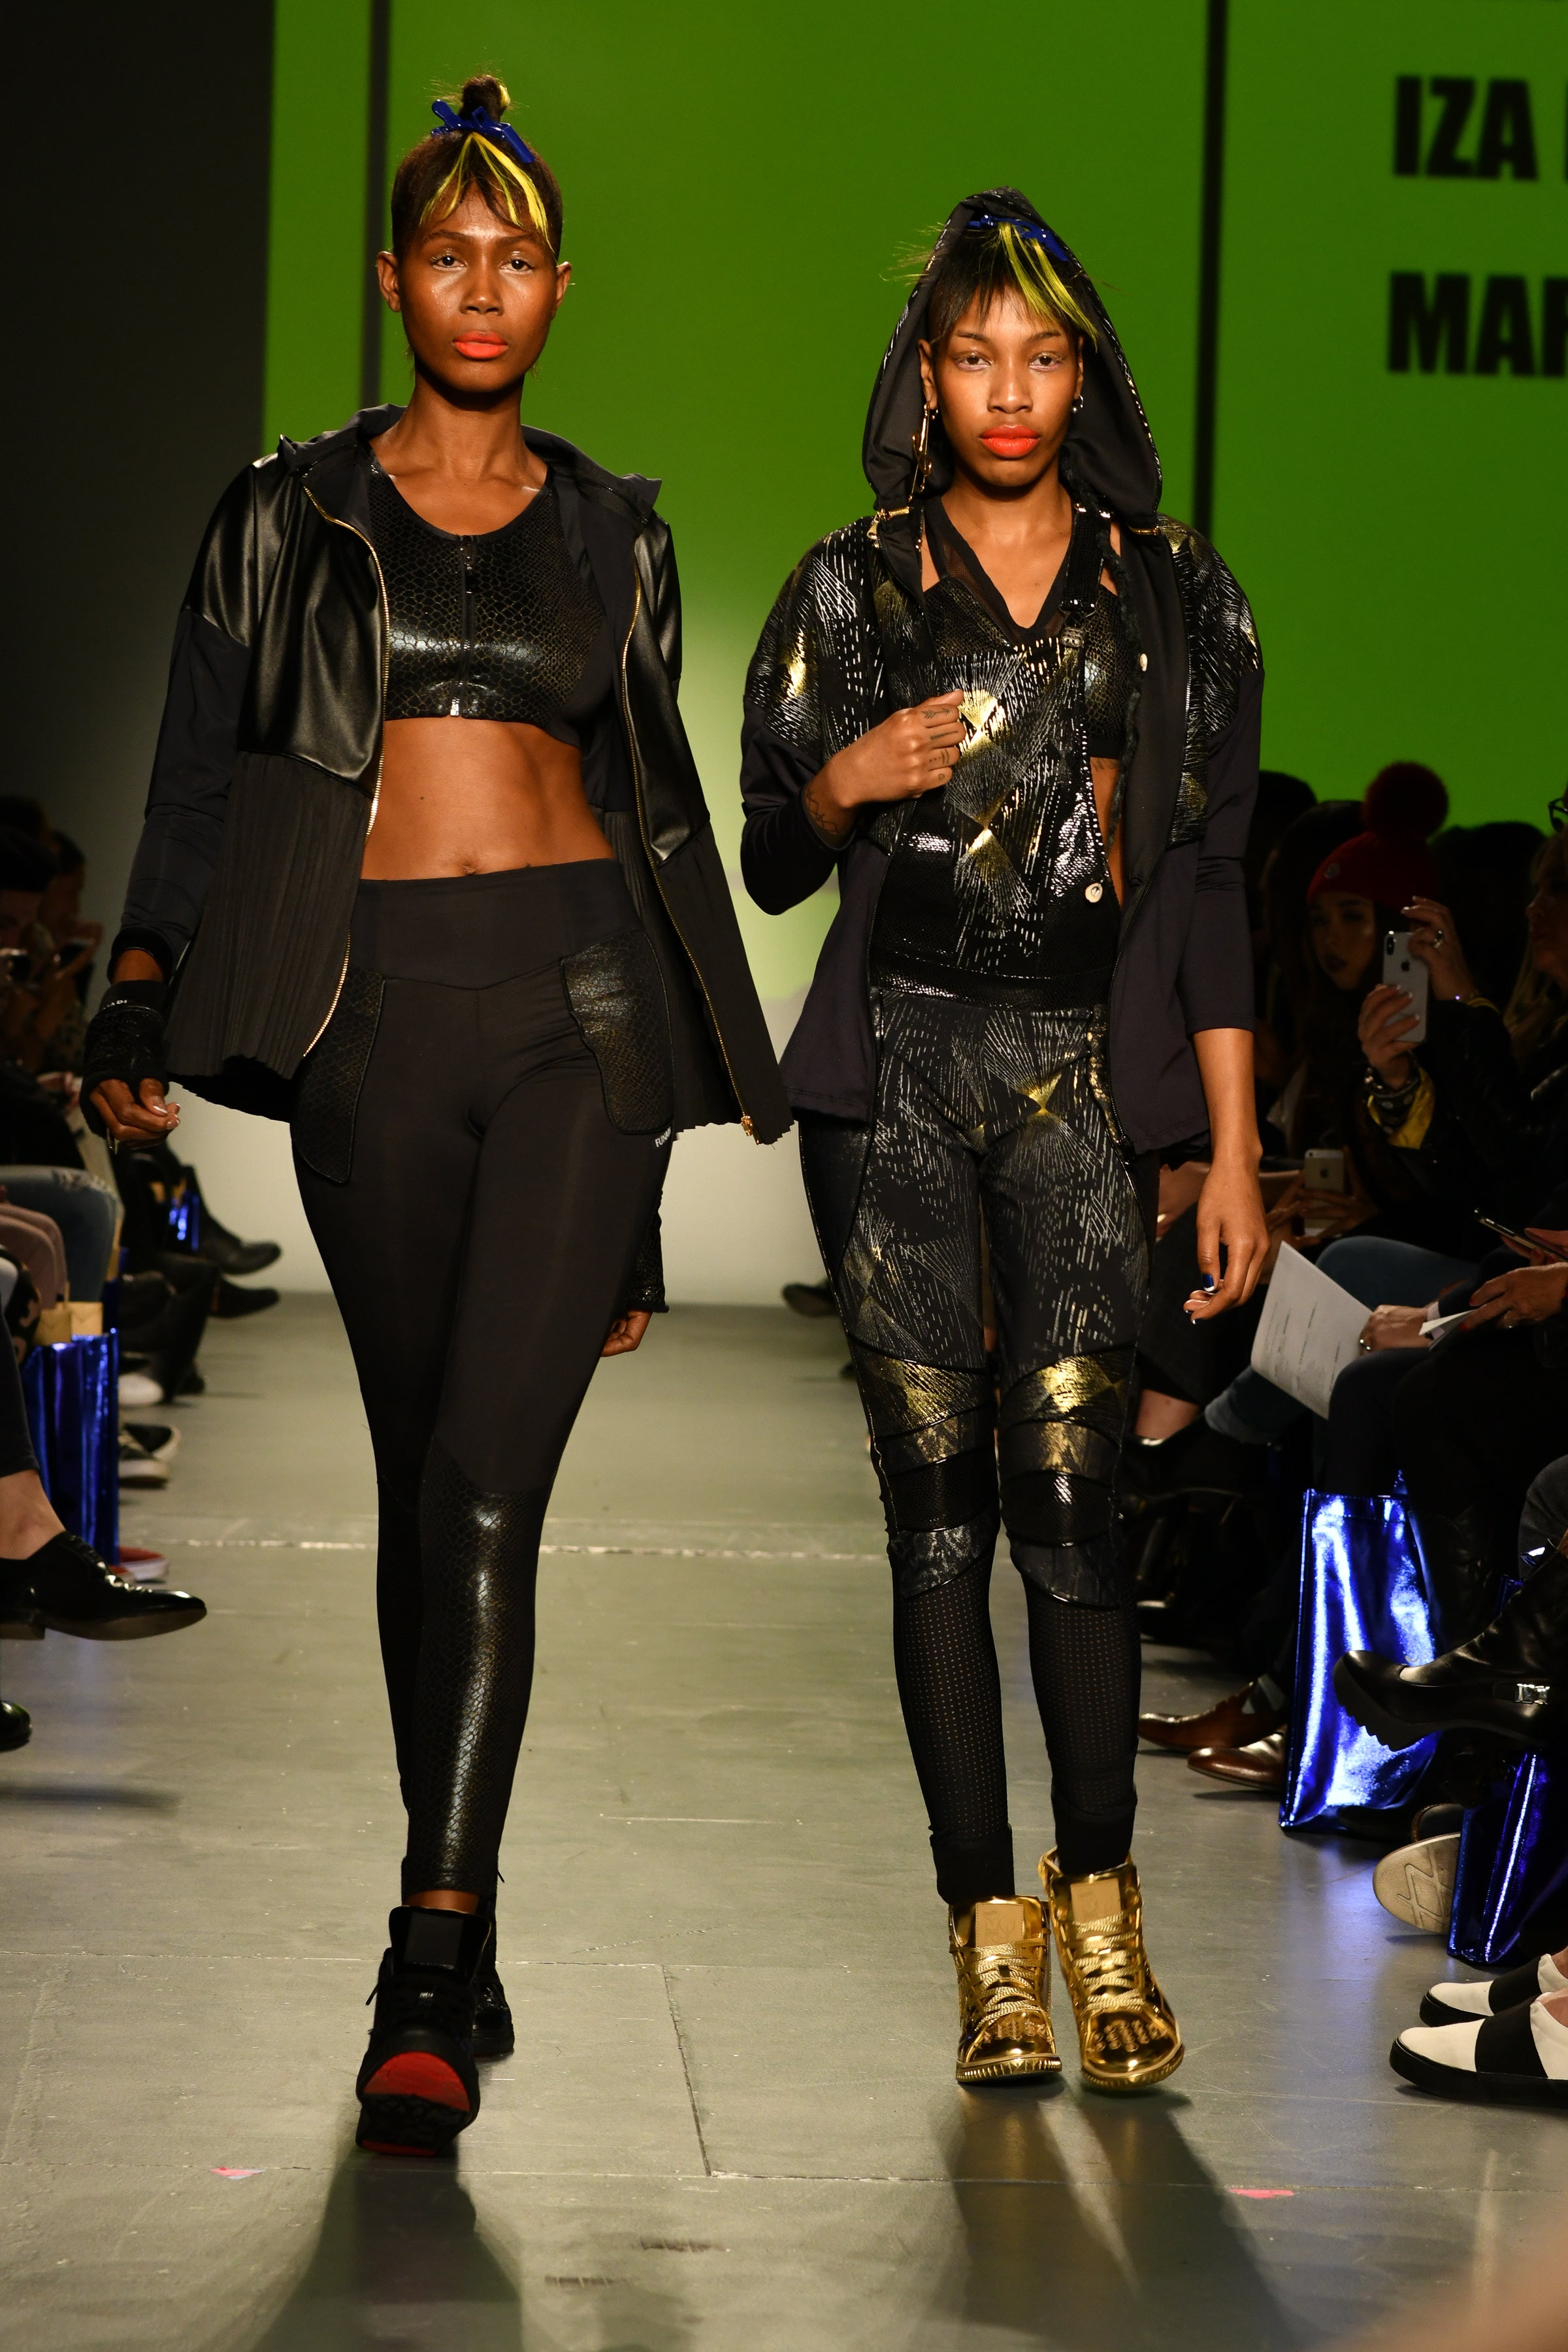 Black Models Rule The Runway A New York Fashion Week Fall 2018
